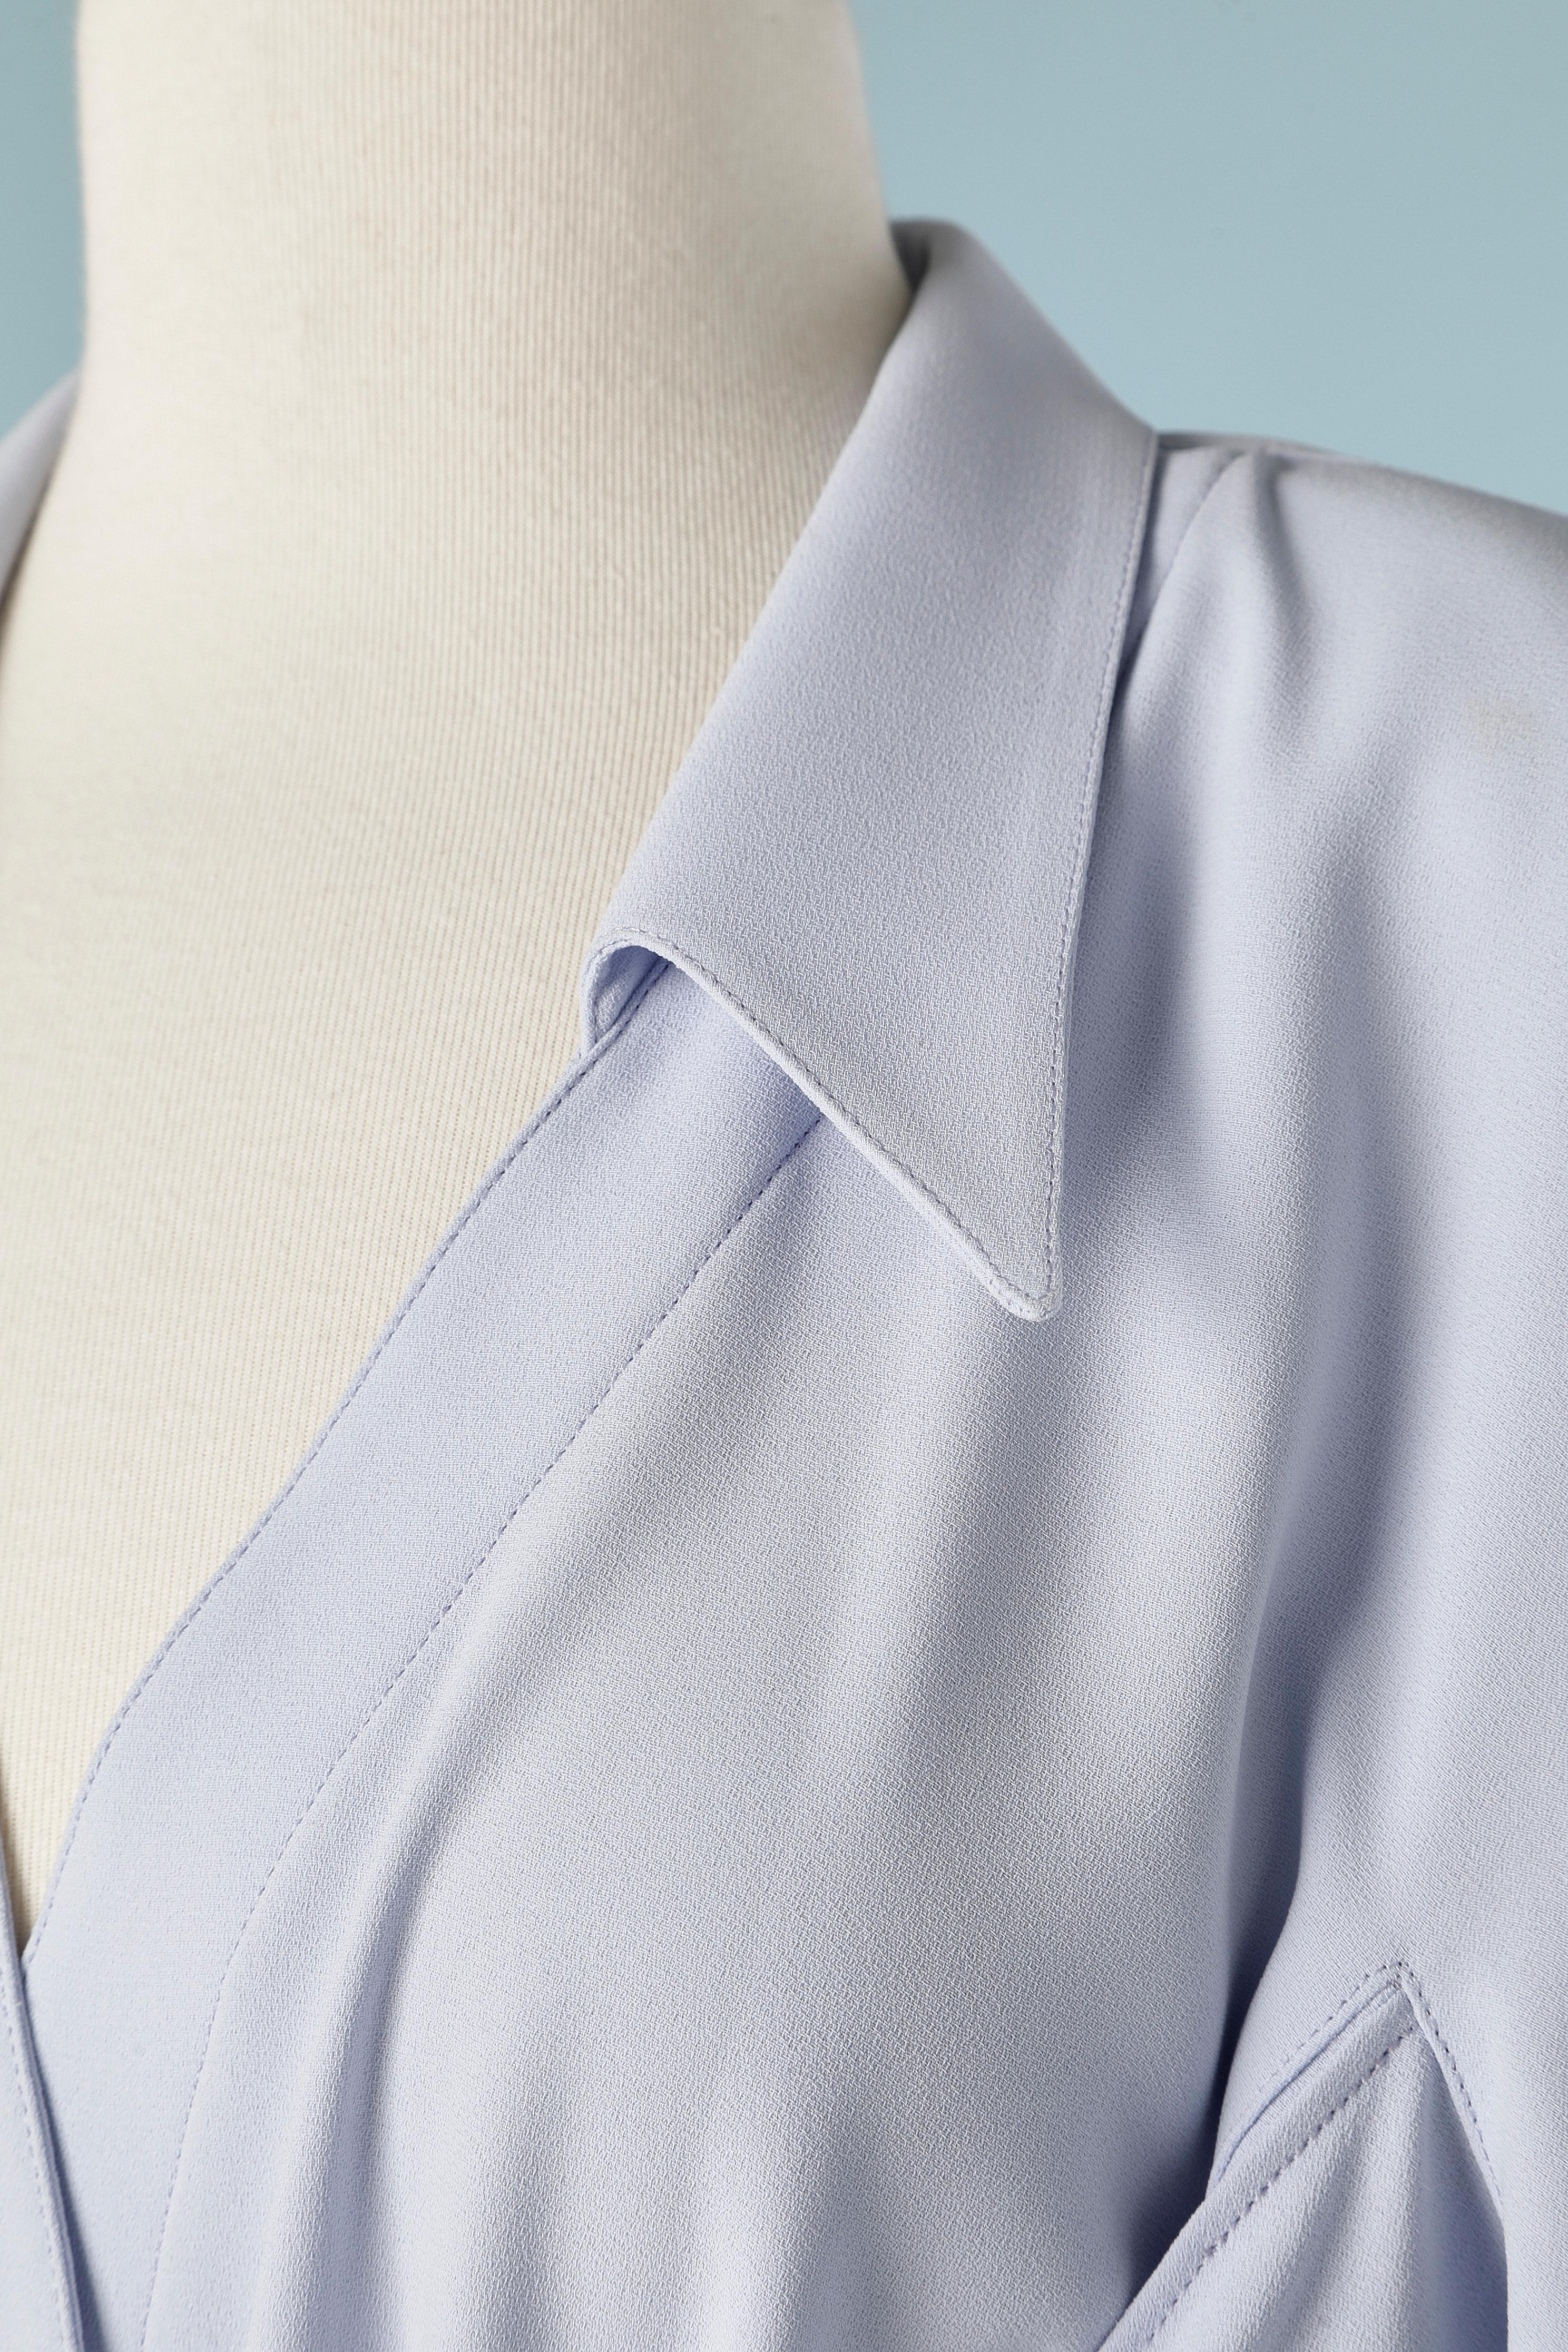 Robe de cocktail bleu pâle avec lien autour du buste. Manches raglan. Mince pad d'épaule. Composition du tissu : 100% polyester (aspect crêpé) 
TAILLE 40( fR) M (One) 